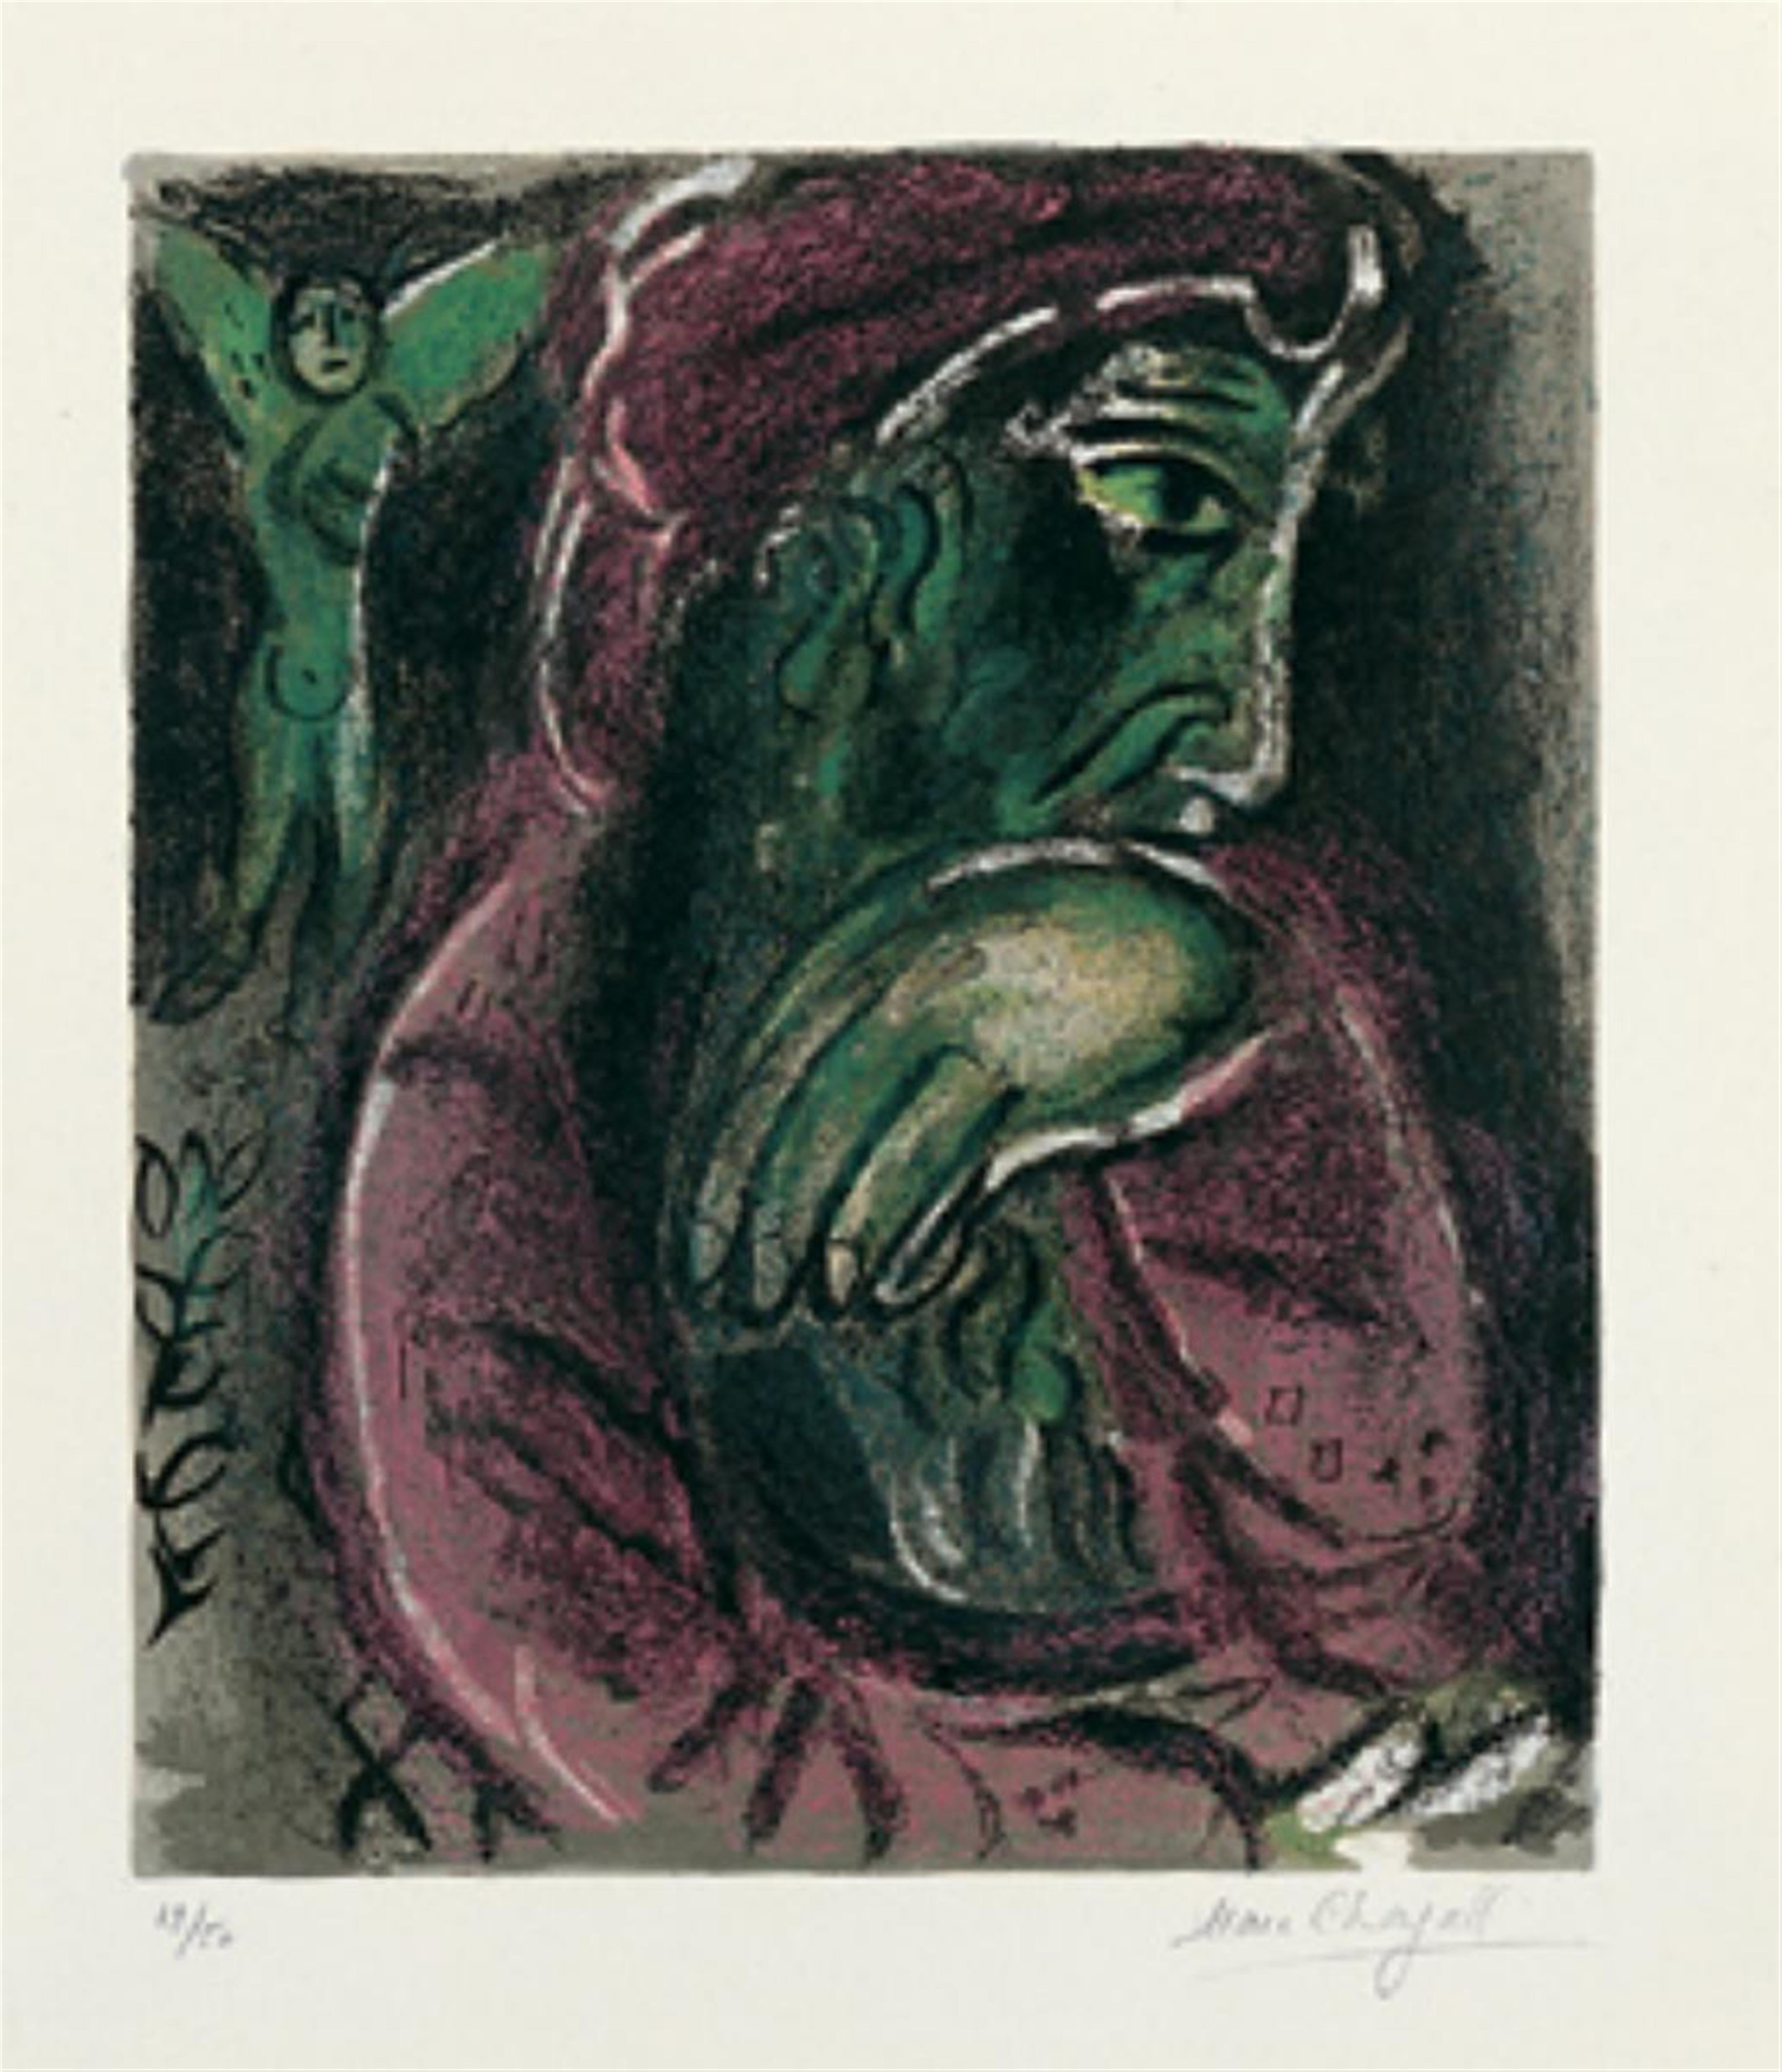 Marc Chagall - Hiob in der Verzweiflung - image-1